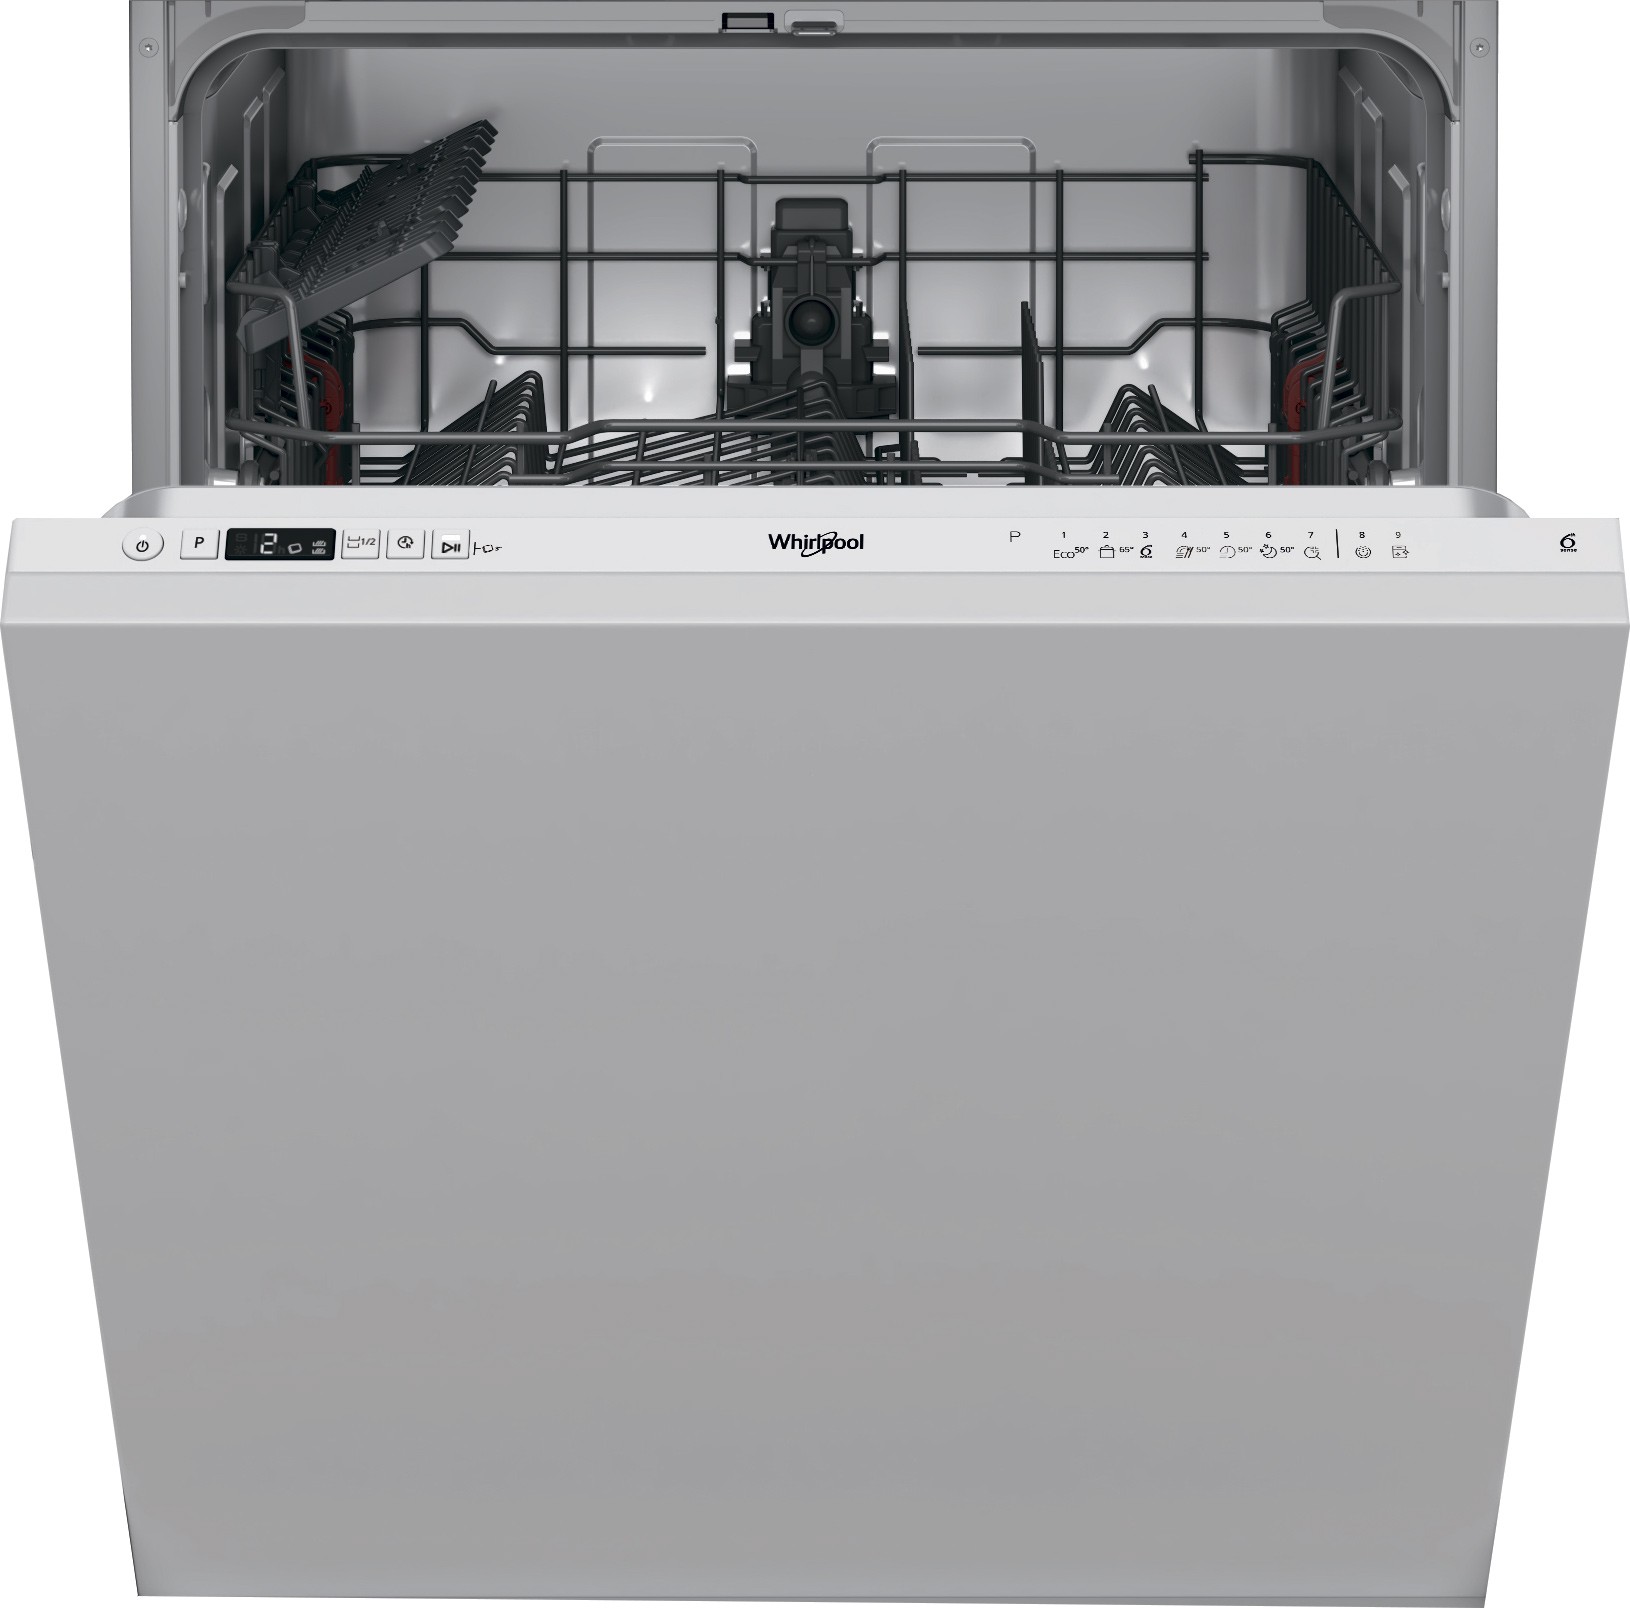 Посудомоечная машина Whirlpool W2I HD526 A в интернет-магазине, главное фото